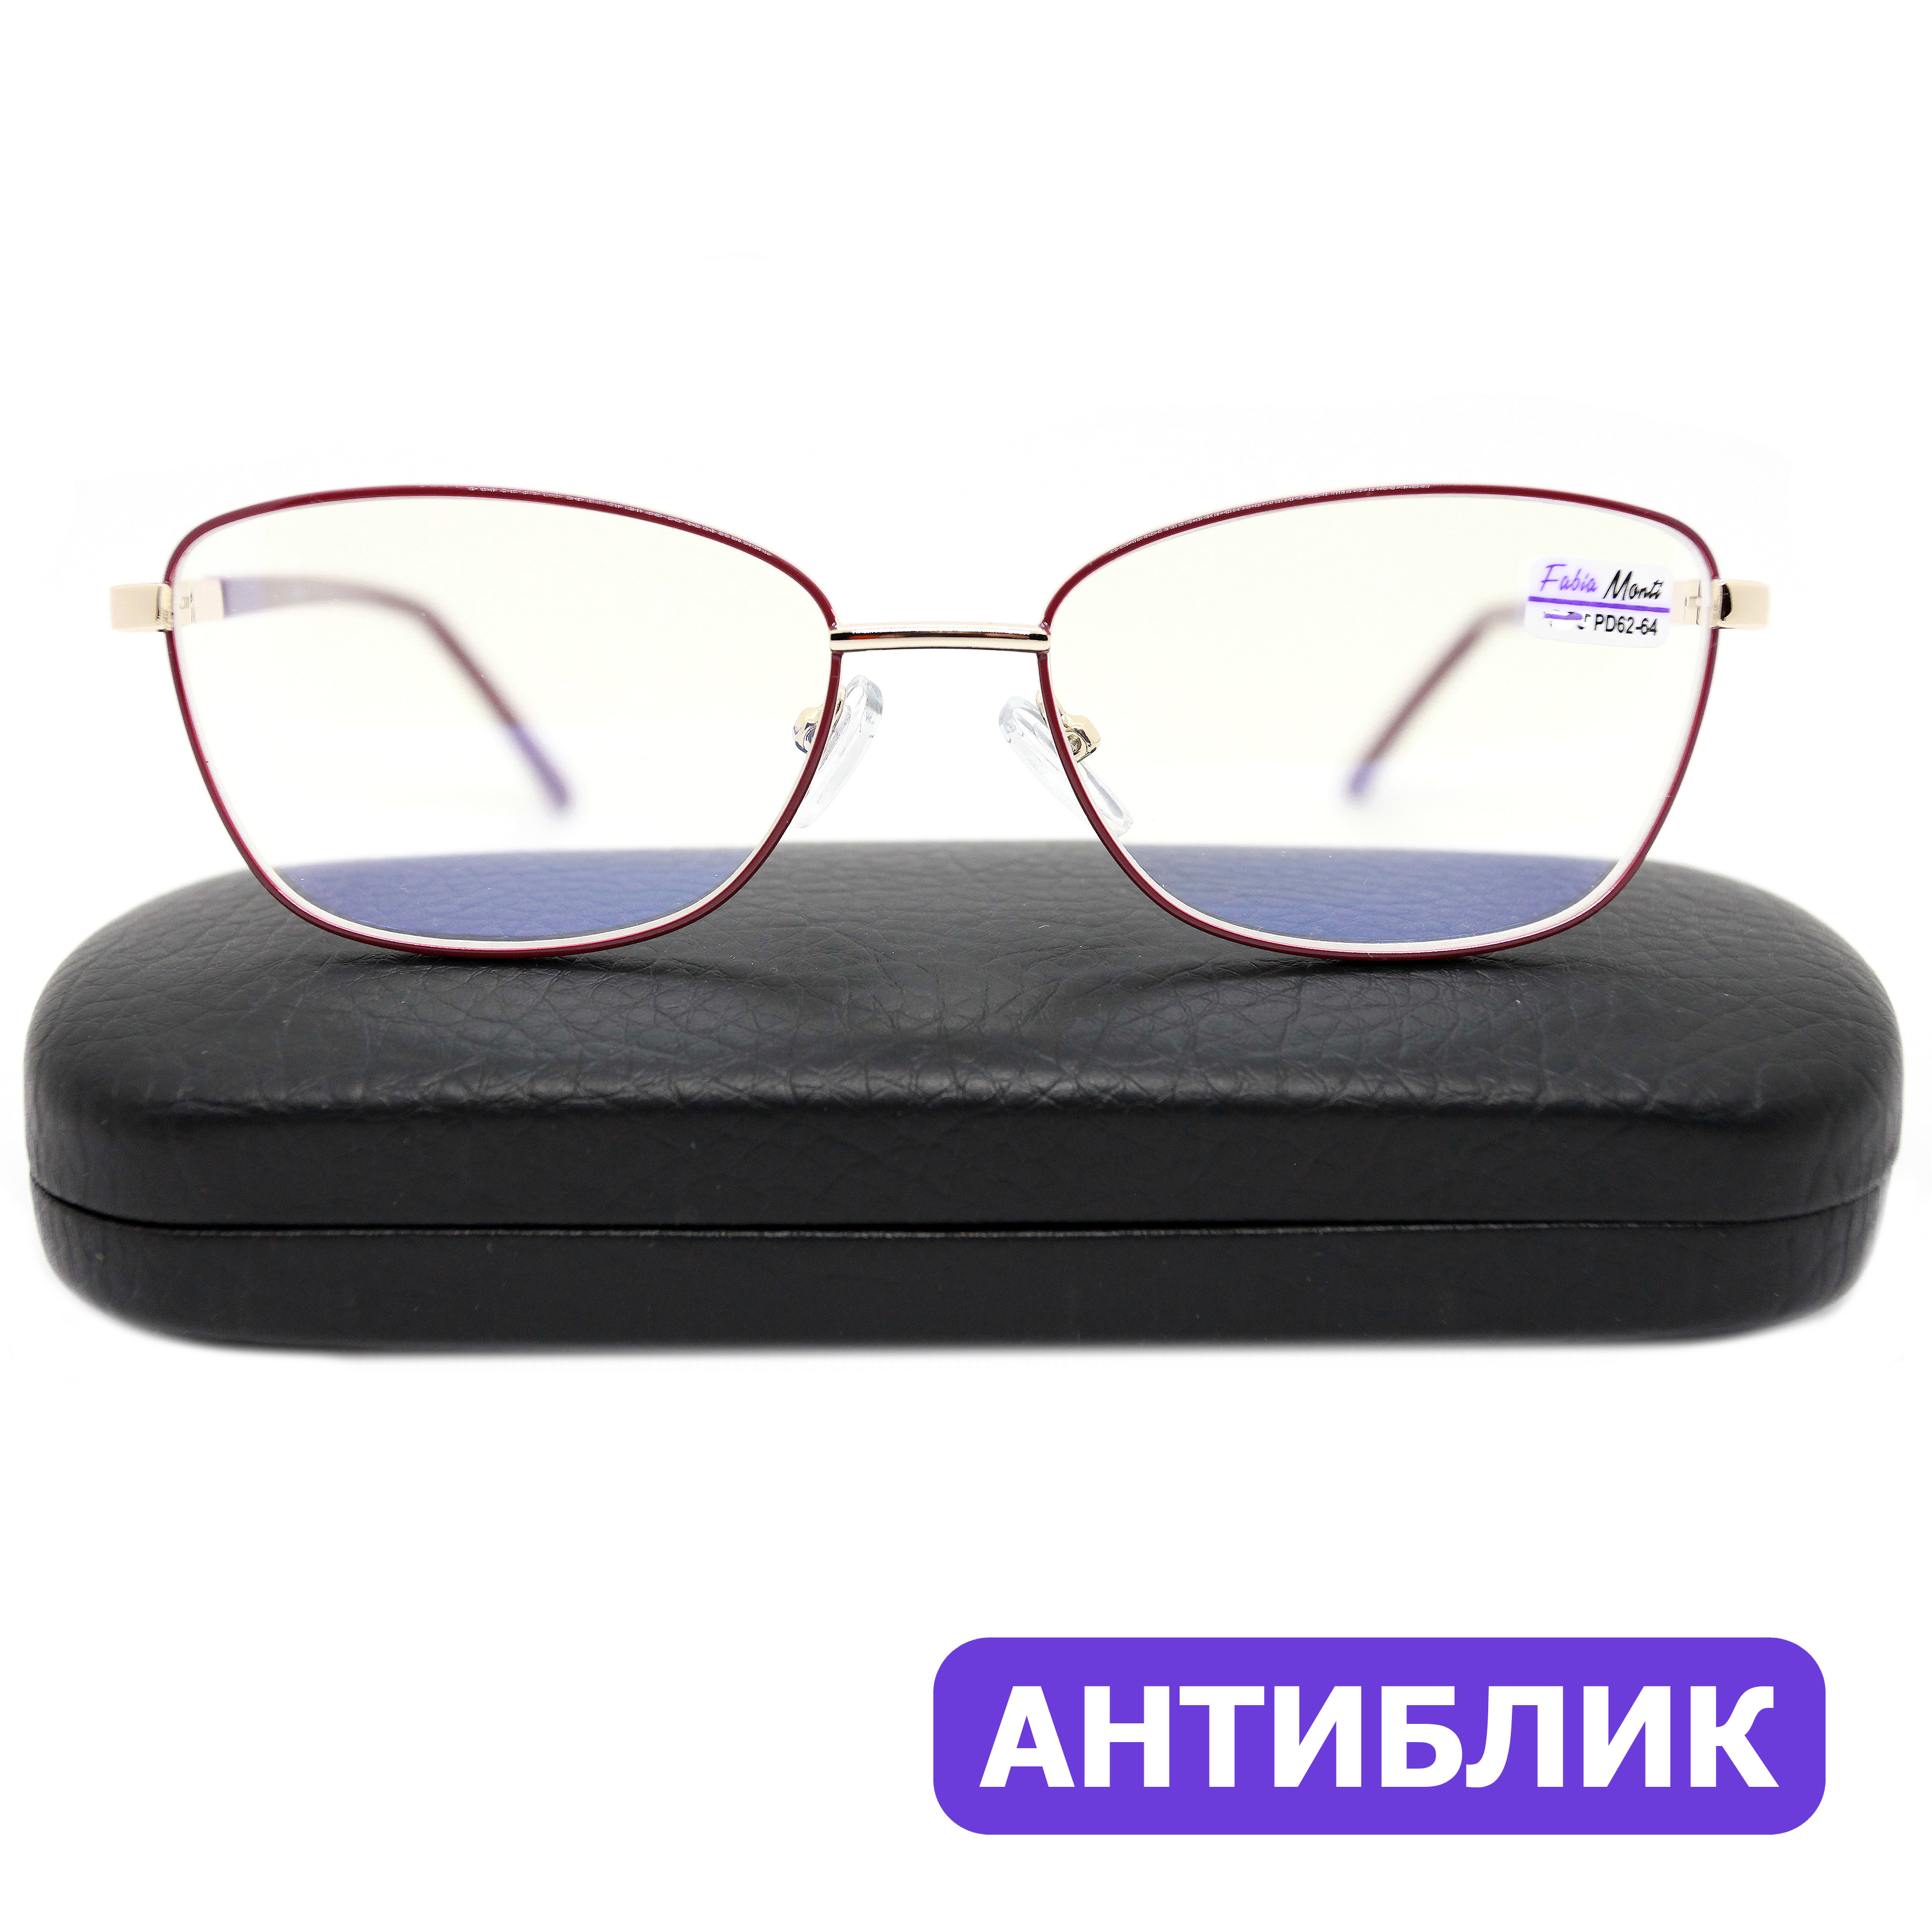 Готовые очки Fabia Monti 8935 +3.75, c футляром, антиблик, цвет бордовый, РЦ 62-64